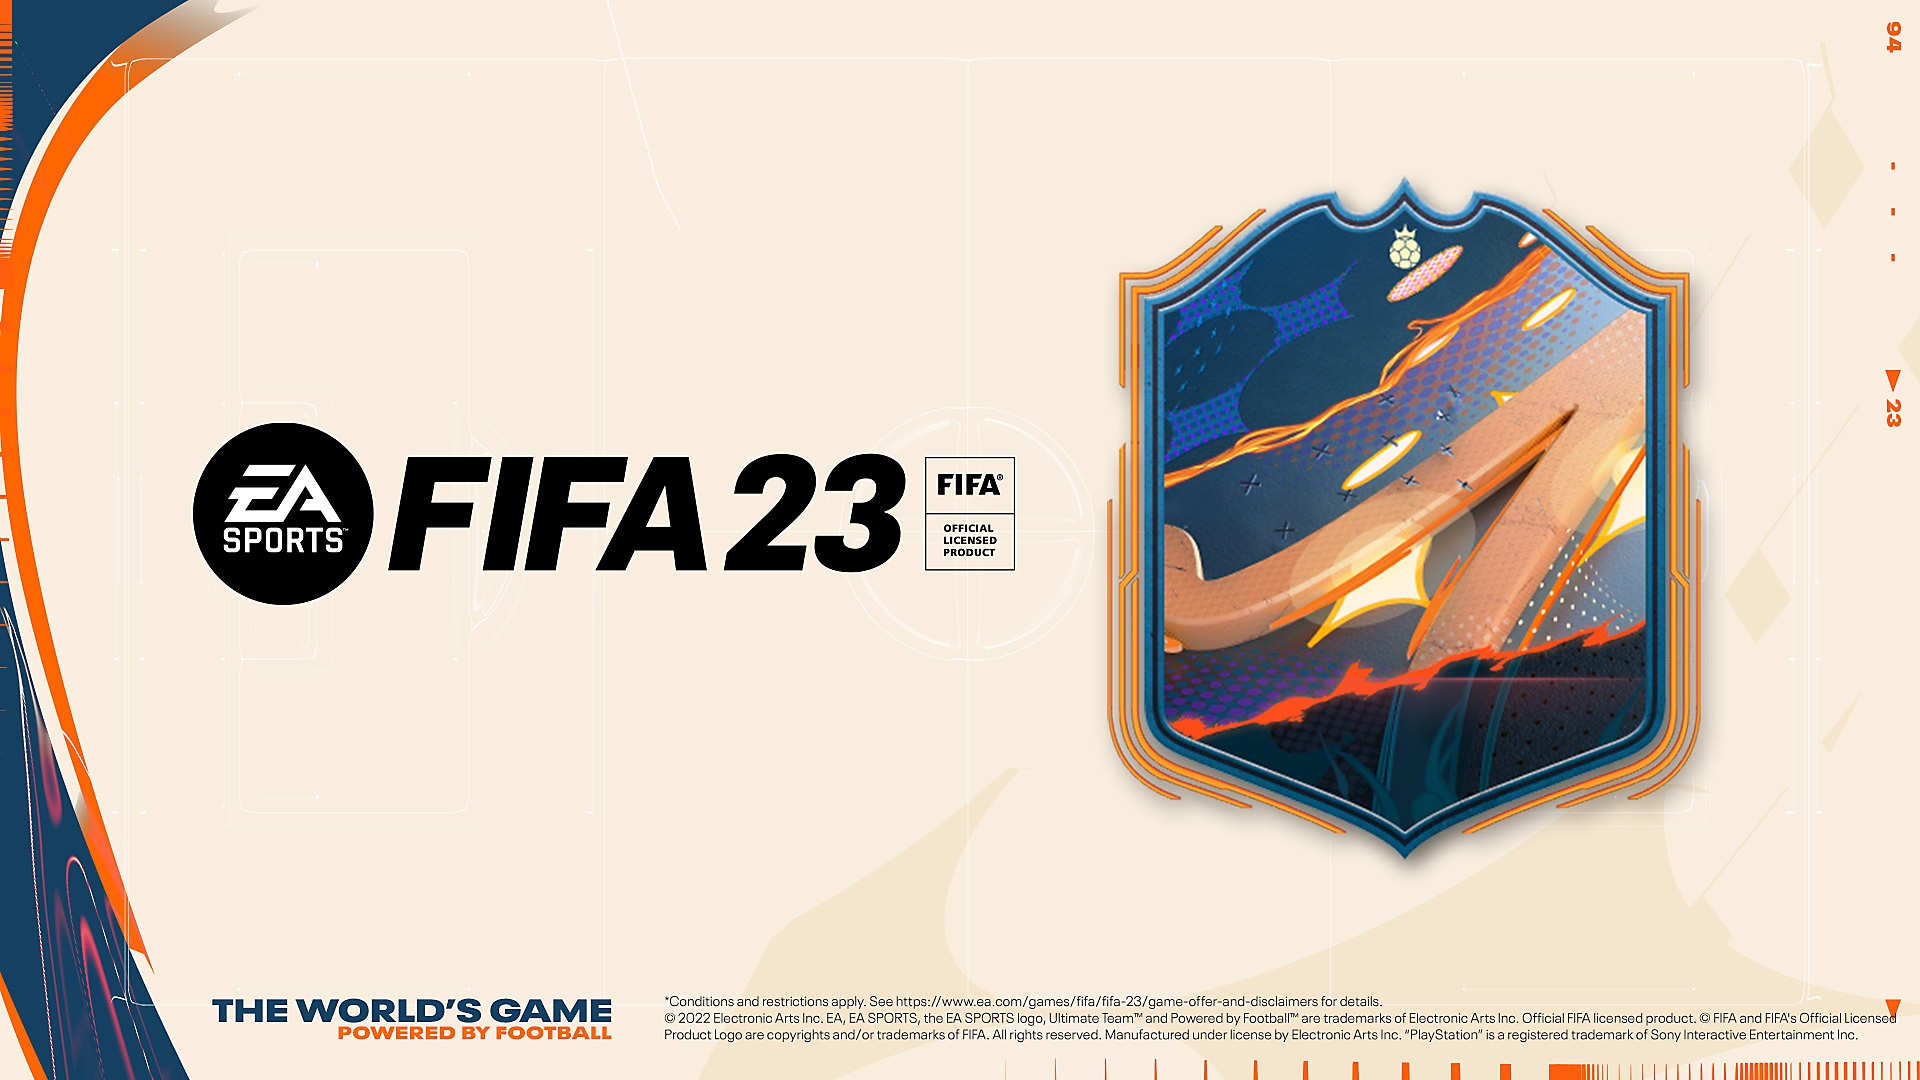 다양한 색상의 크레스트와 FIFA 23 로고를 볼 수 있는 EA Sports FIFA 23 예약 주문 아트워크